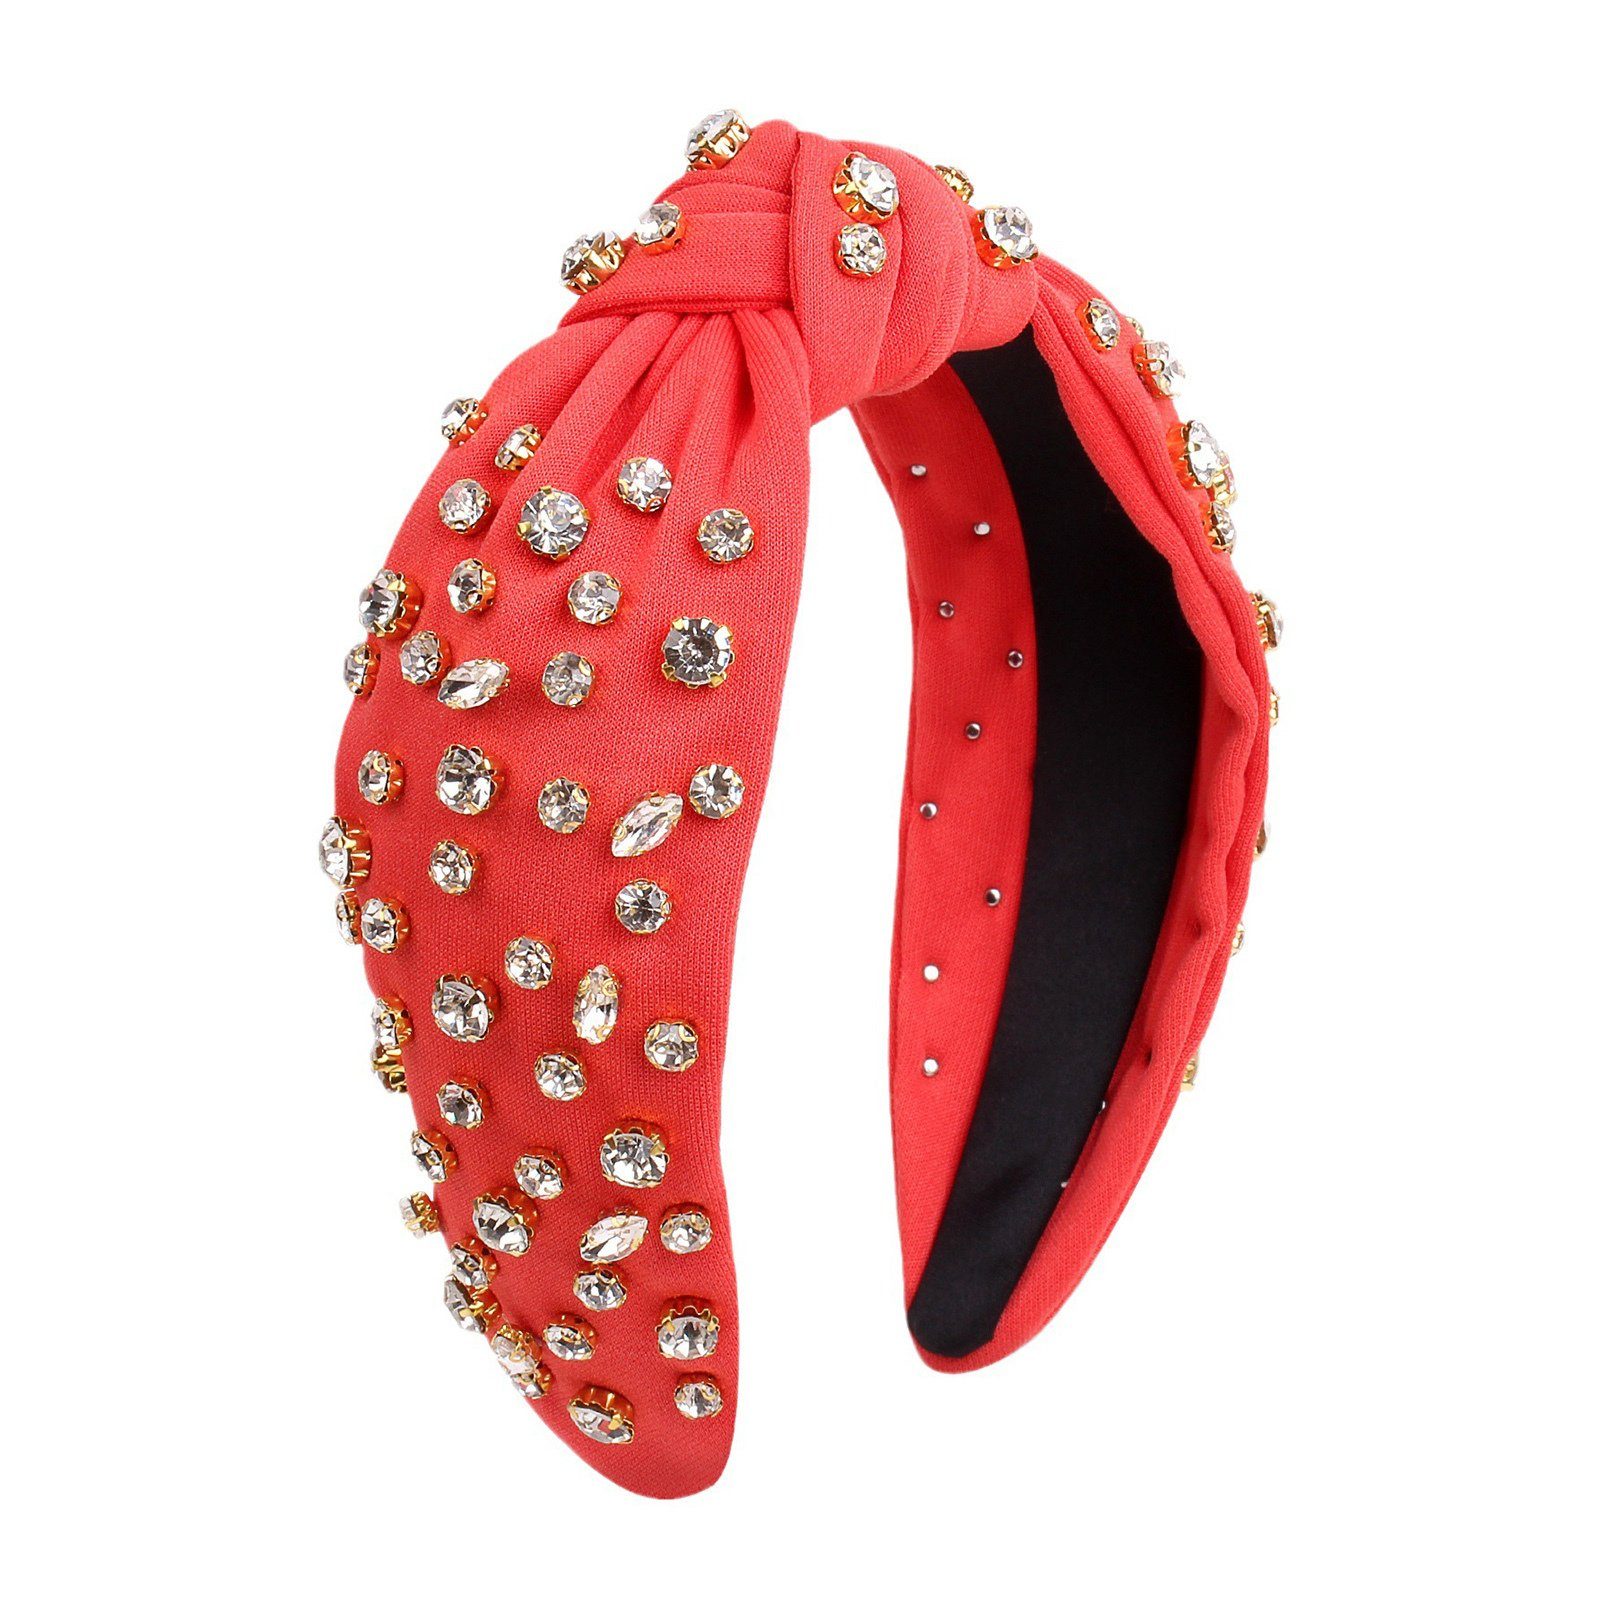 [Super Sonderverkauf durchgeführt! ] Blusmart Haarspange Mode Strass Weibliche Haarband Haarband watermelon Süße Ringförmige red Modische